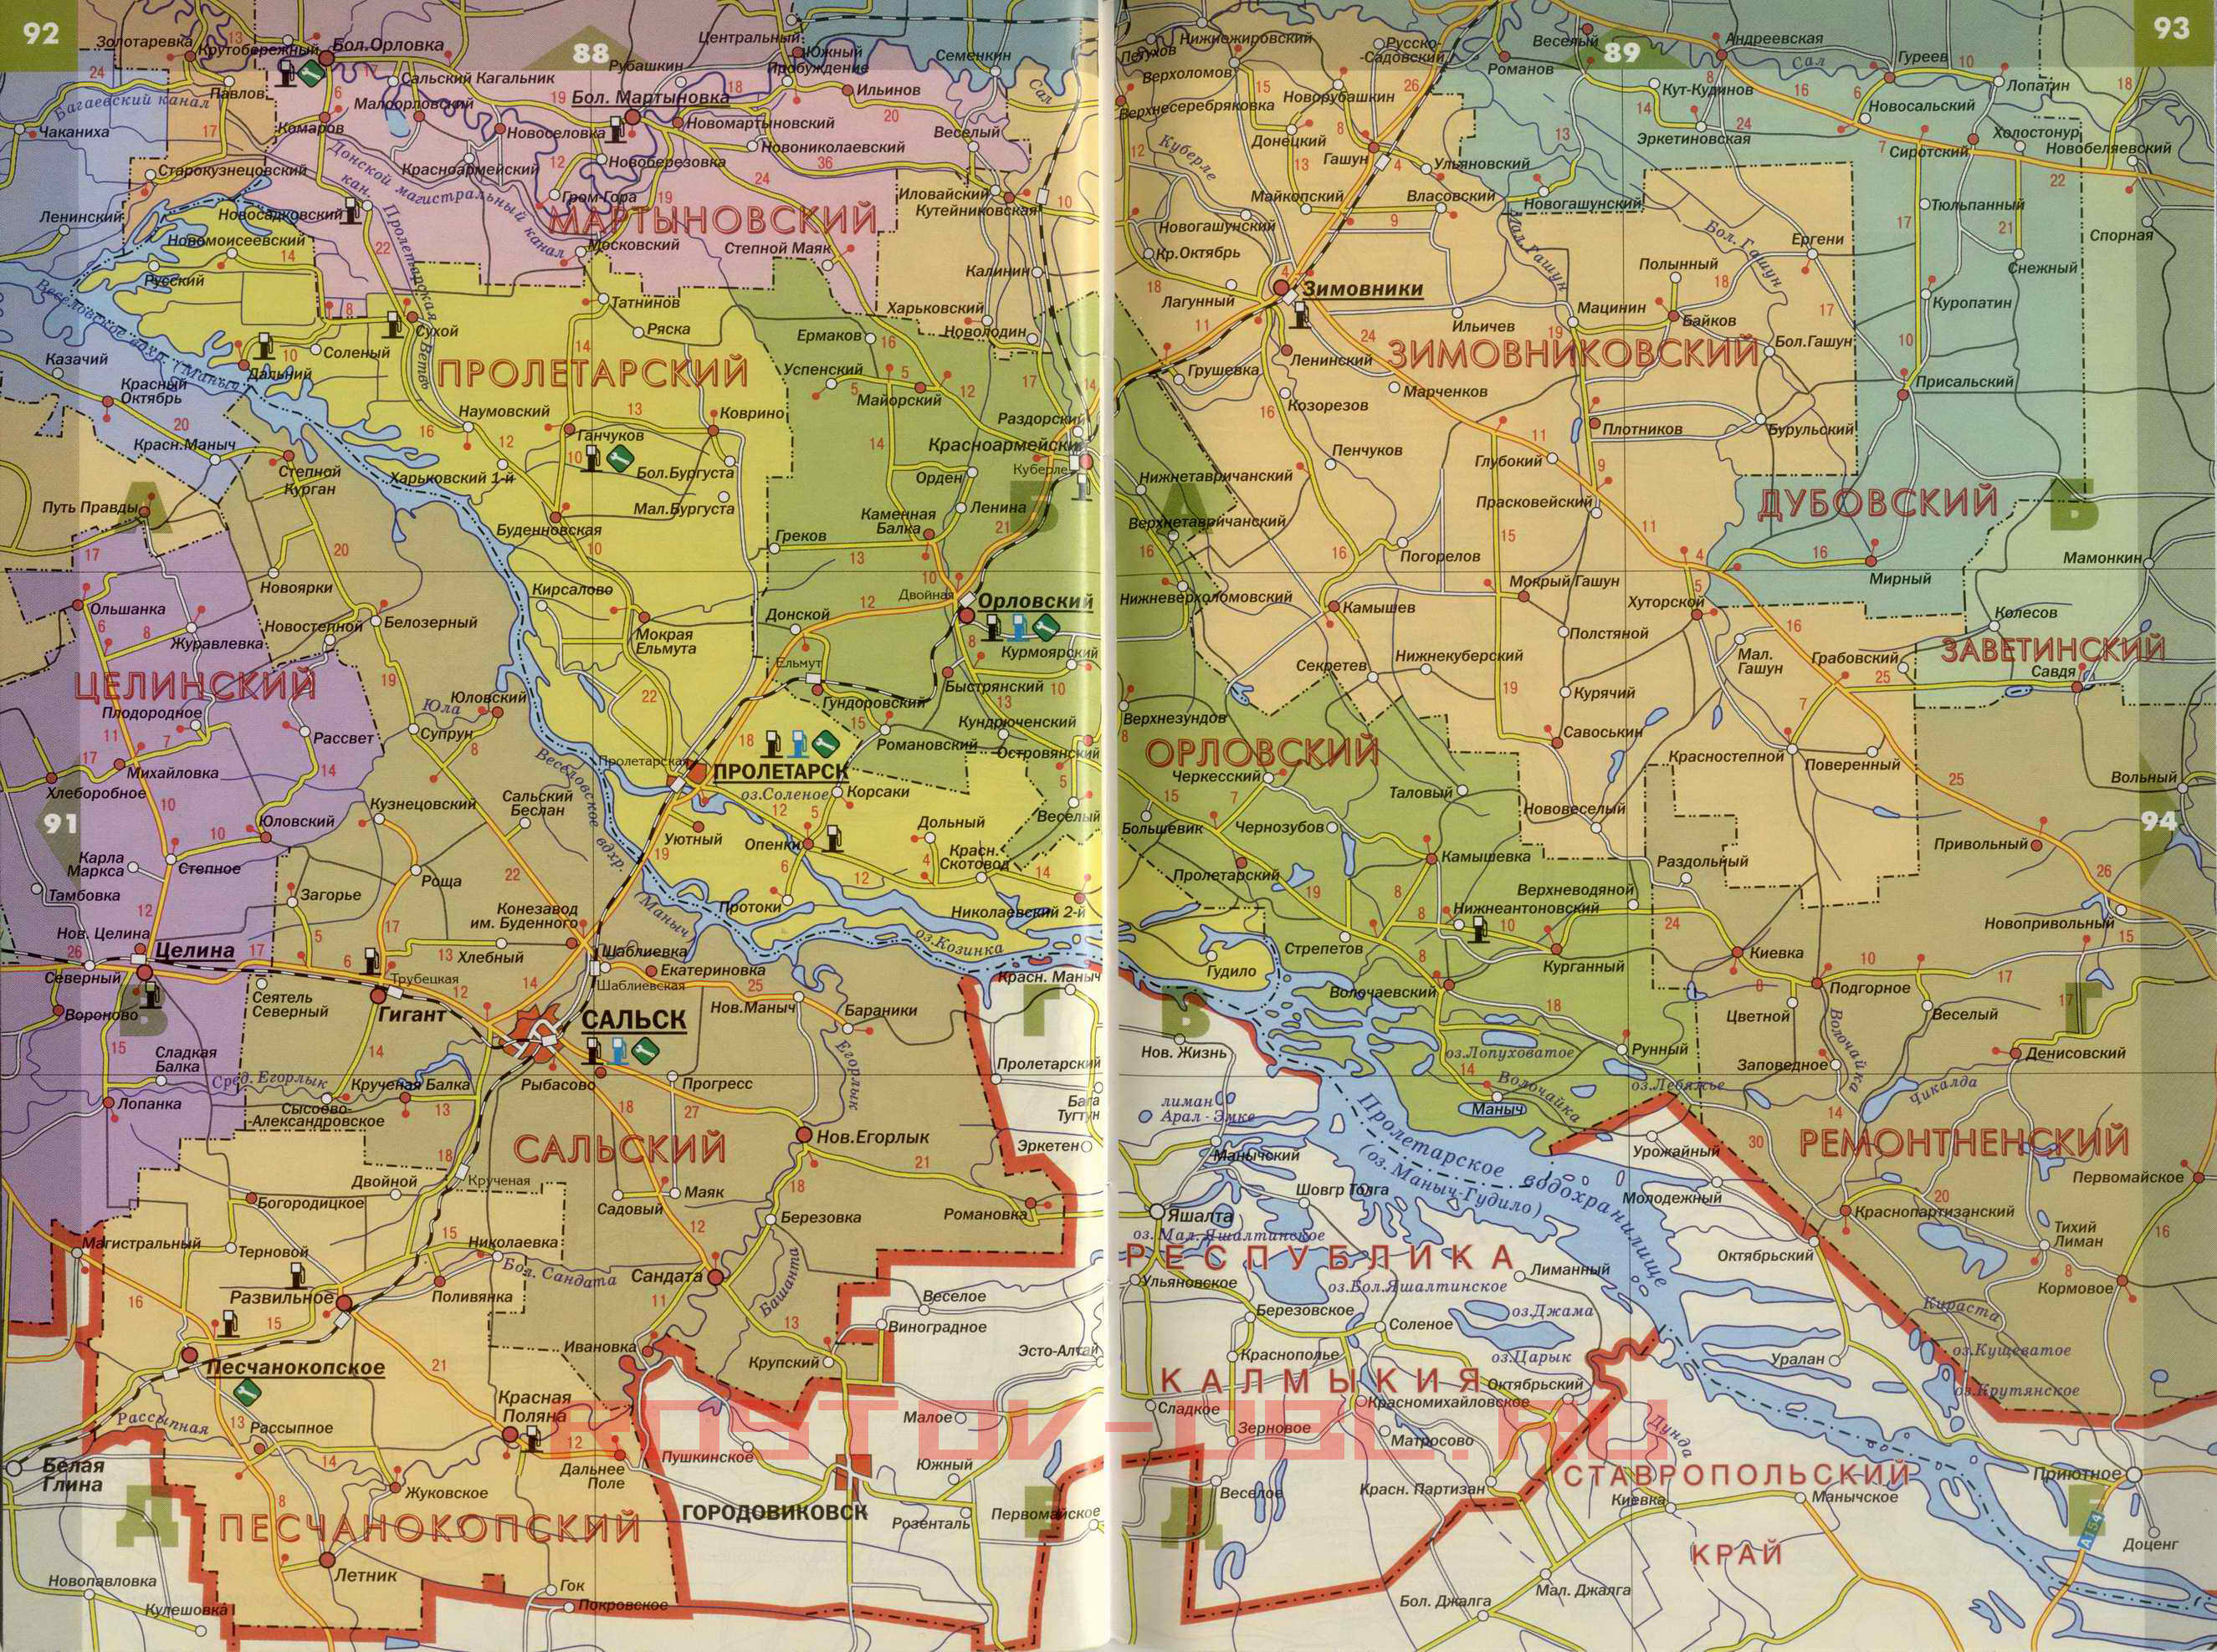  Карта Ростовской области. Подробная карта автомобильных дорог - Ростовская область, B1 - 